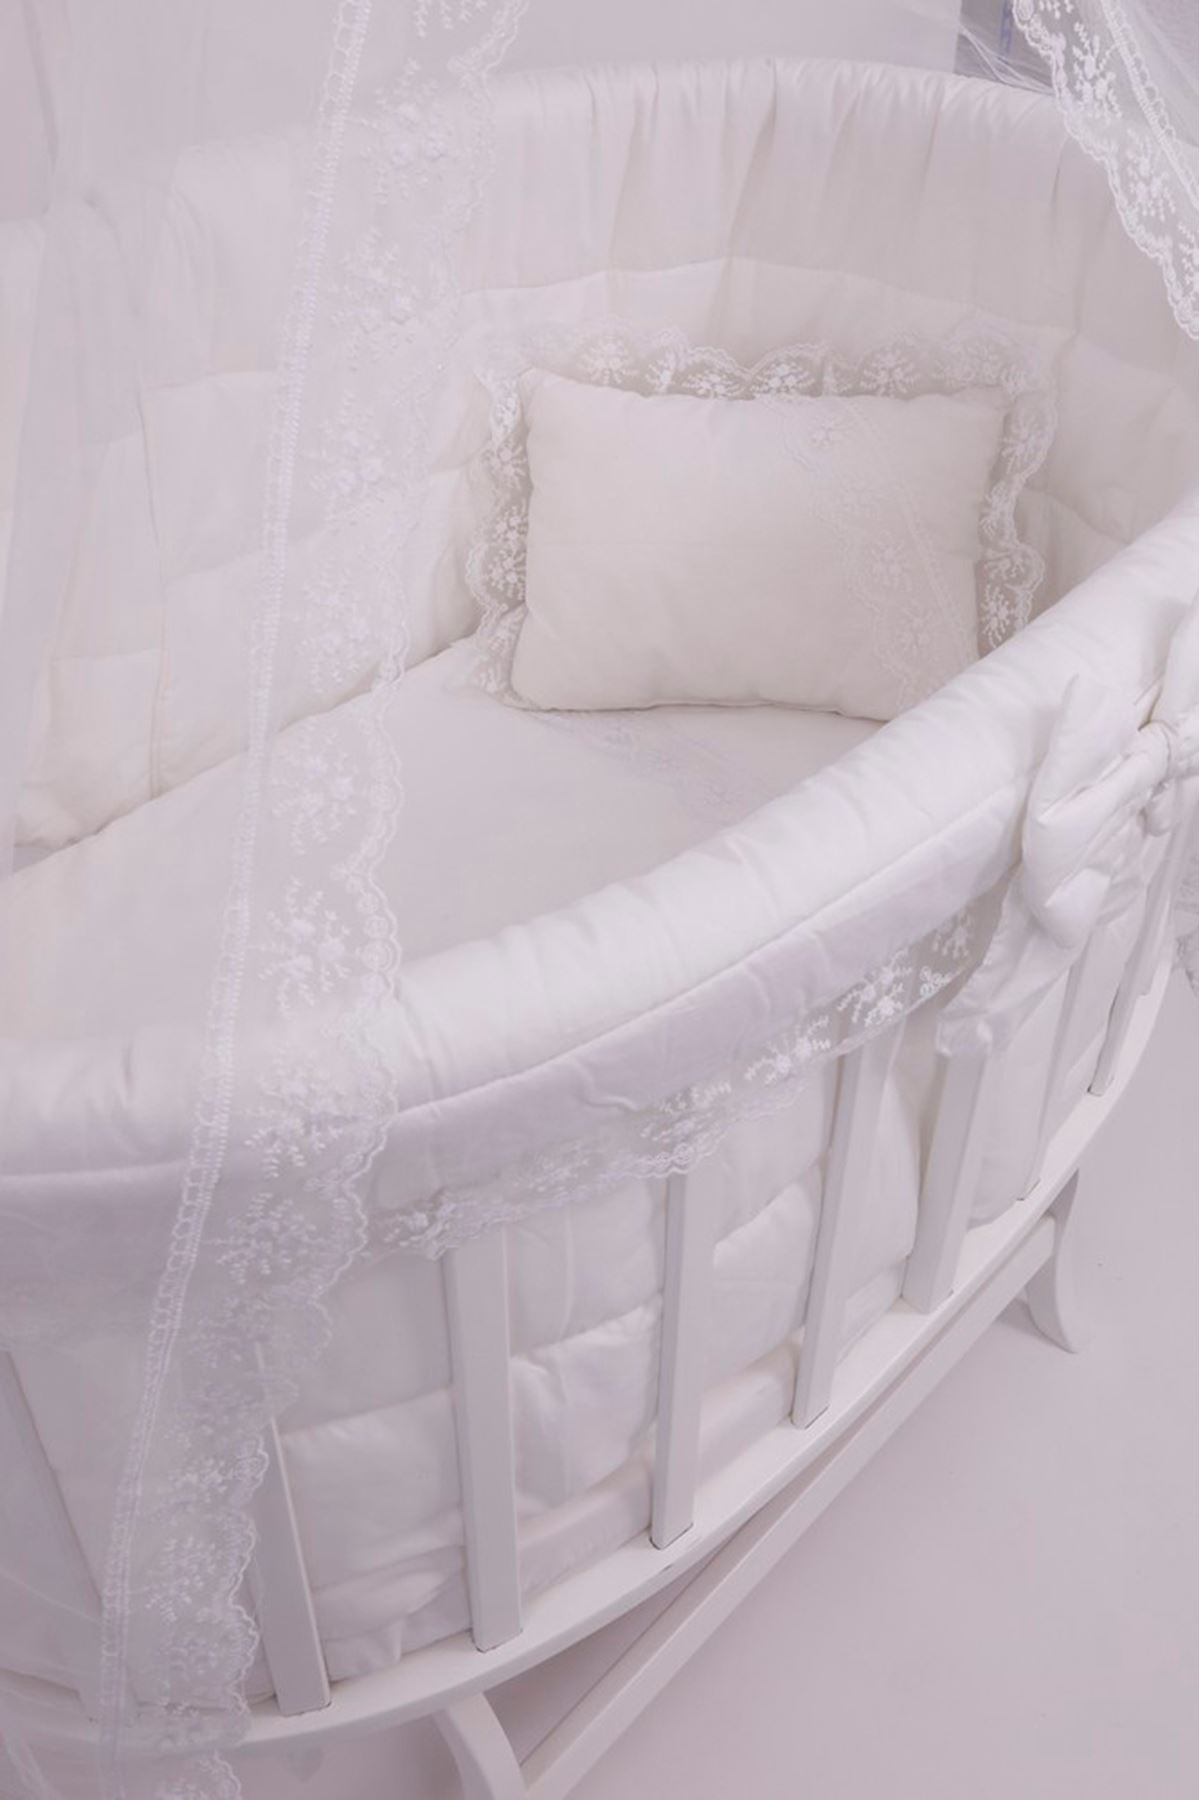 سرير أبيض بيضاوي حجم كبير  ضانتيل أبيض عادي